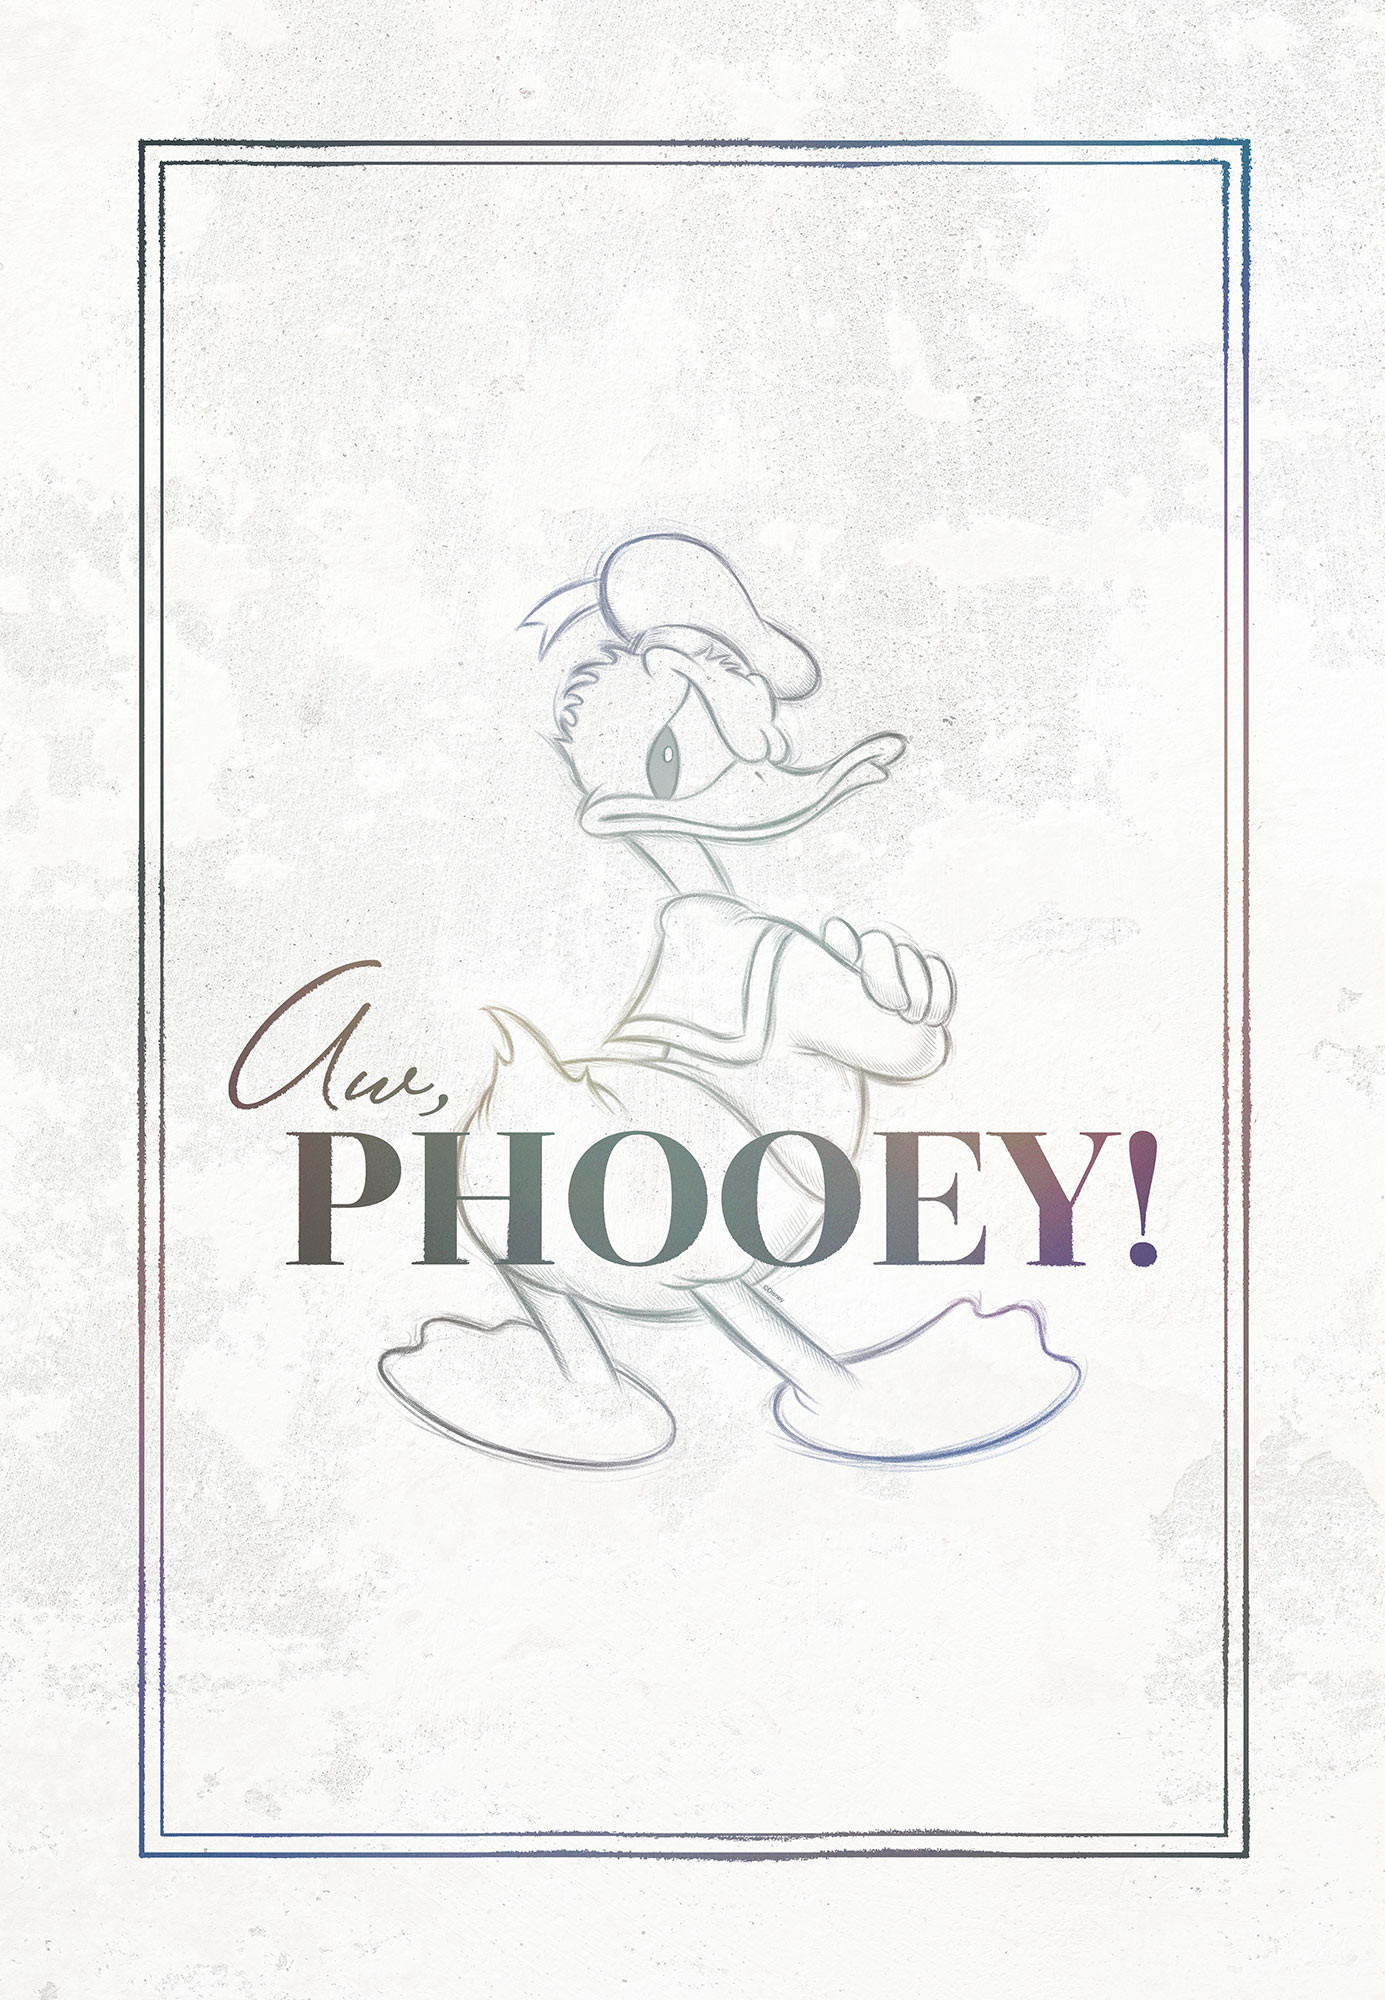 Donald Duck Phooey!